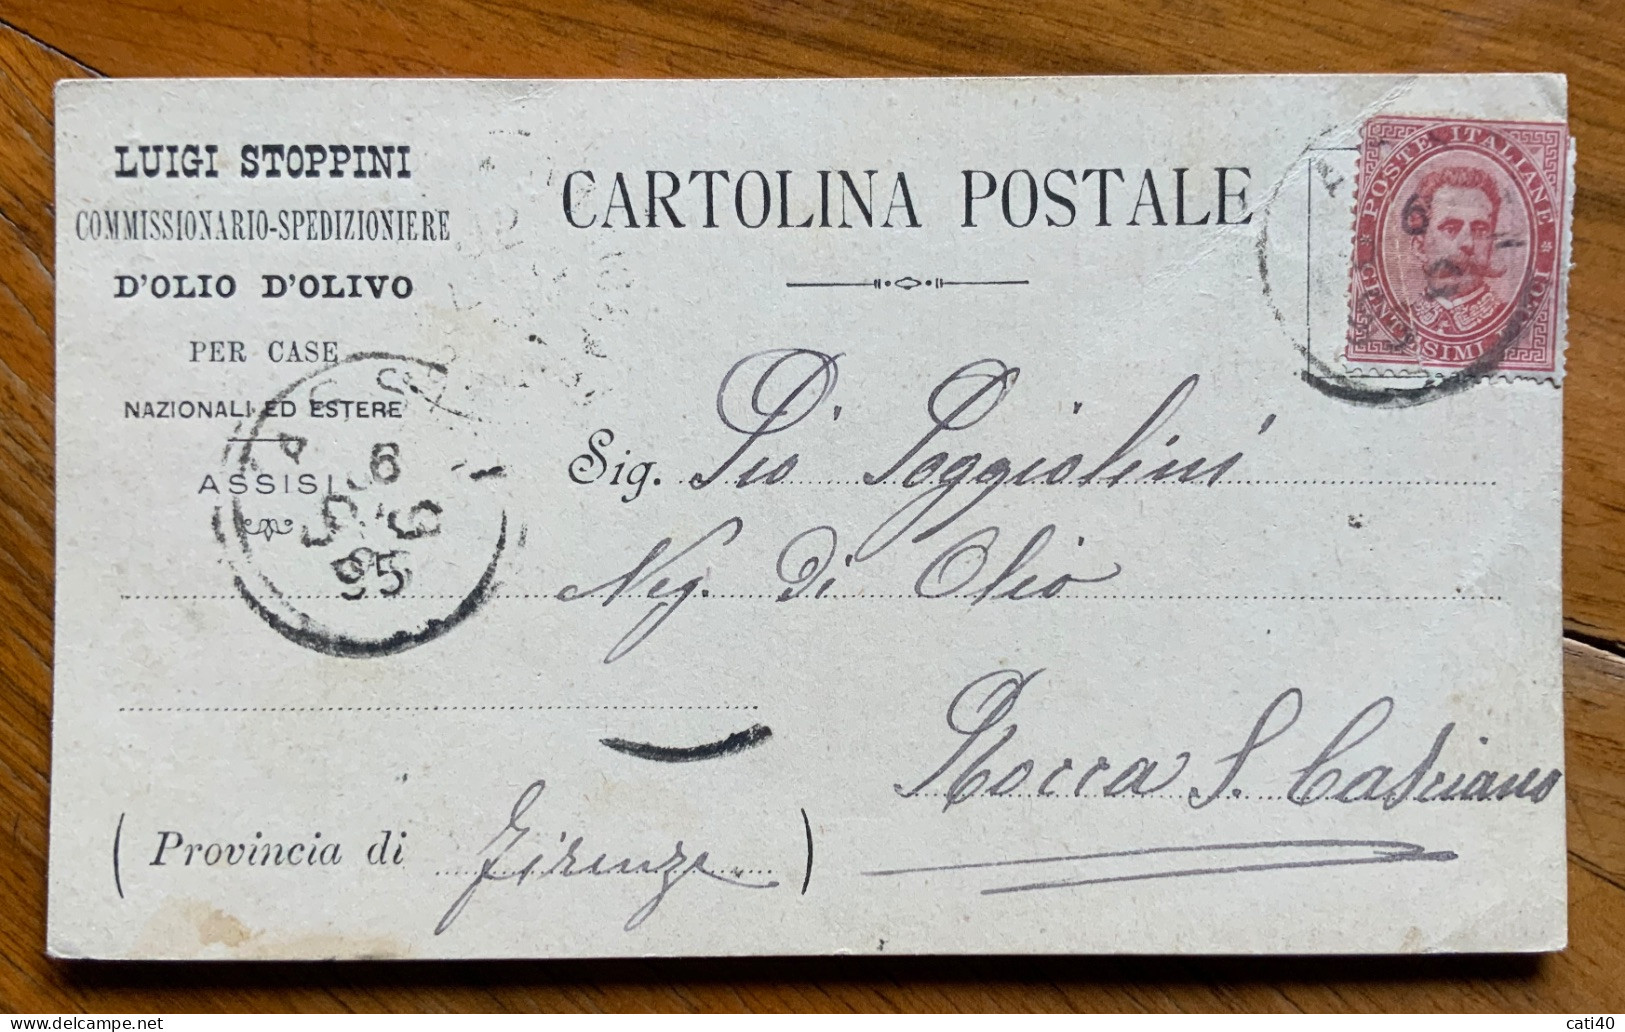 OLIO D'OLIVA - ASSISI LUIGI STOPPINI  6/12/1895 - CARTOLINA PUBBLICITARIA AUTOGRAFA X PIO POGGIOLINI - ROCCA S.CASCIANO - Poststempel